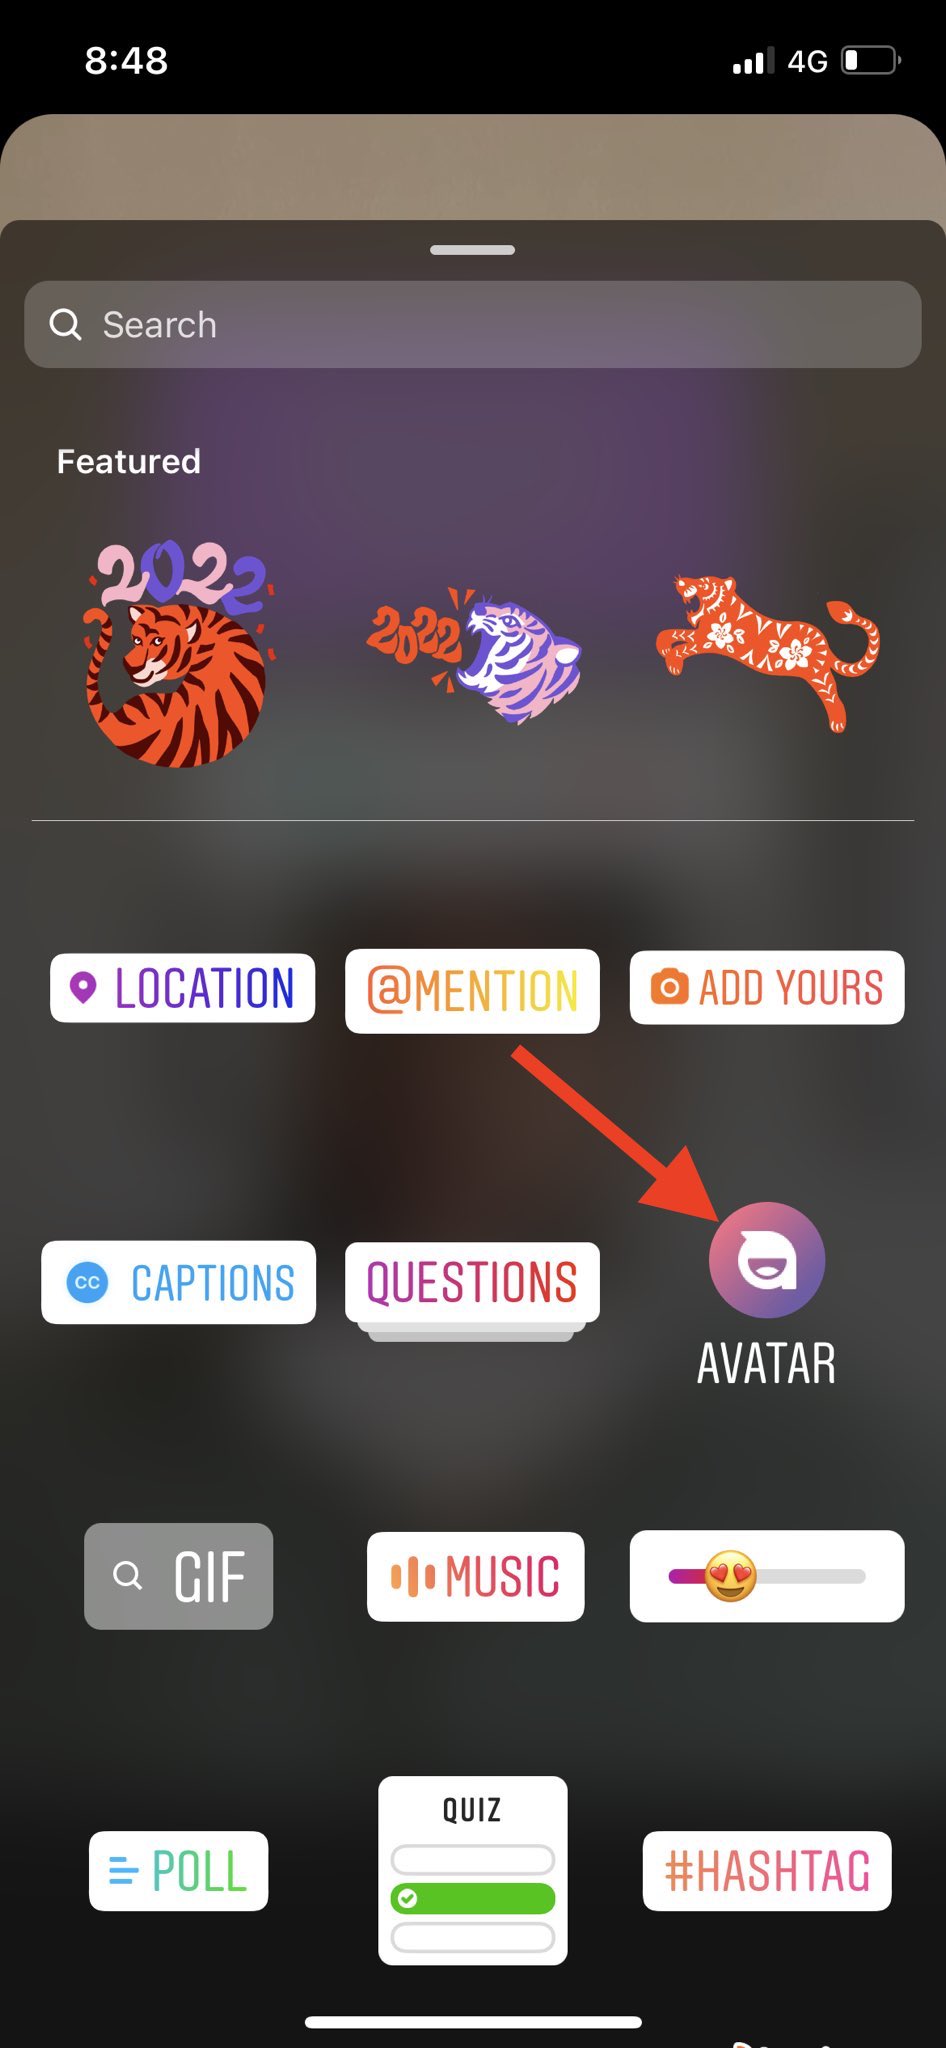 Avatar icon in Instagram Sticker tray